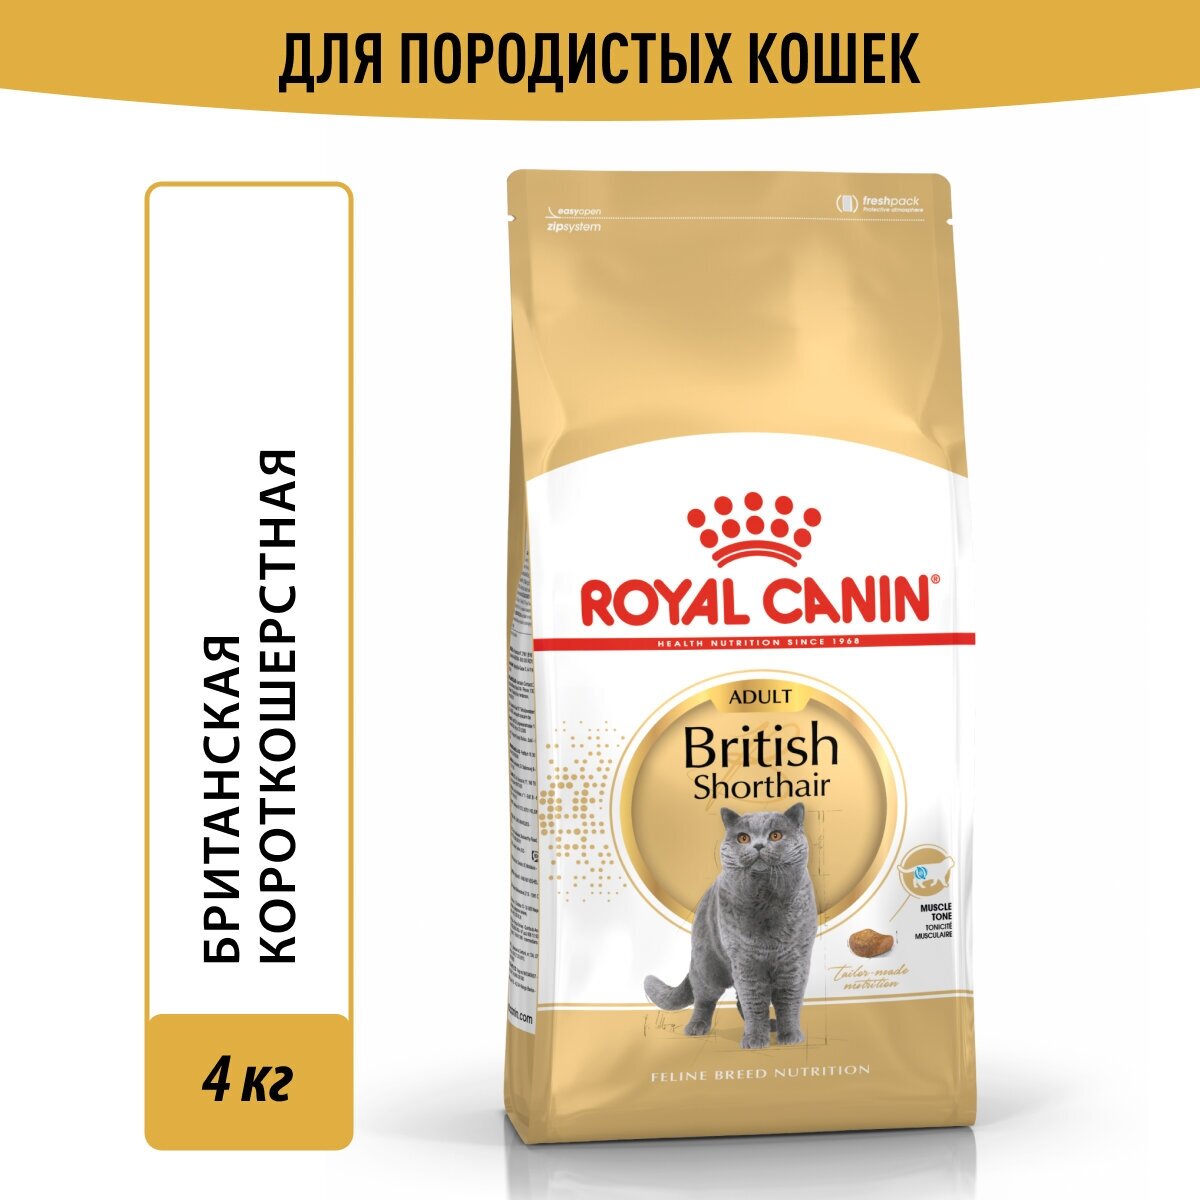 Сухой корм для кошек Royal Canin для британских короткошерстных 4 кг